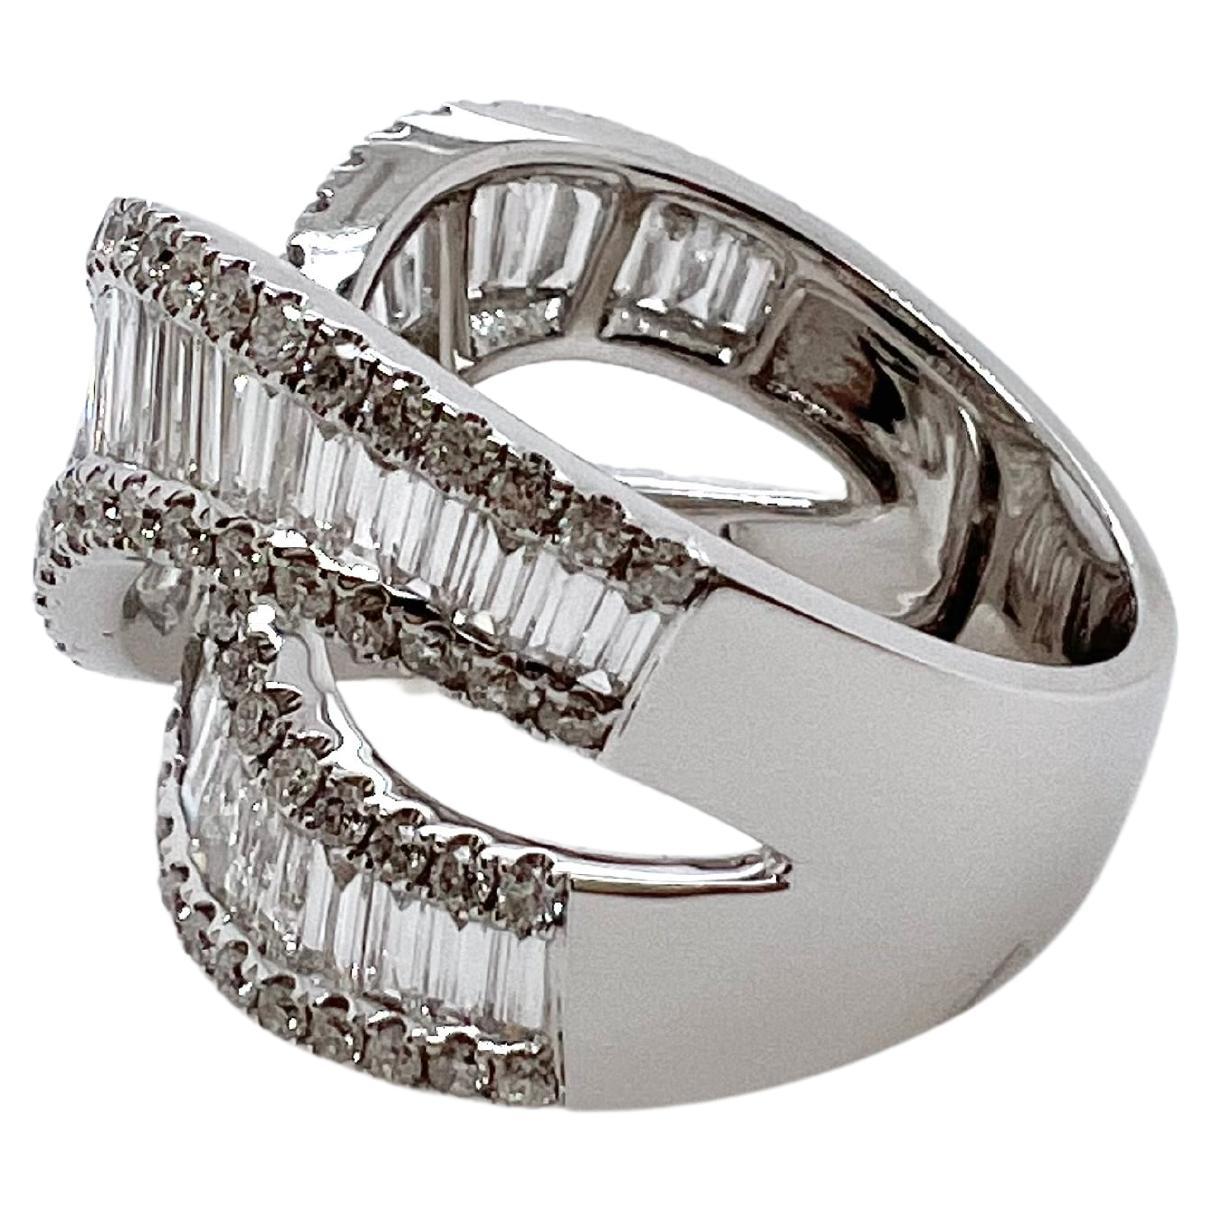 Dieser schöne Crossover-Diamant-Baguette-Ring wird Ihr Lieblingsring sein.  Die wunderschönen langen Diamantbaguettes sind
in der Fassung aus 18 Karat Weißgold mit einem kunstvollen Muster versehen.  Die Struktur des Rings macht ihn sehr bequem
zu